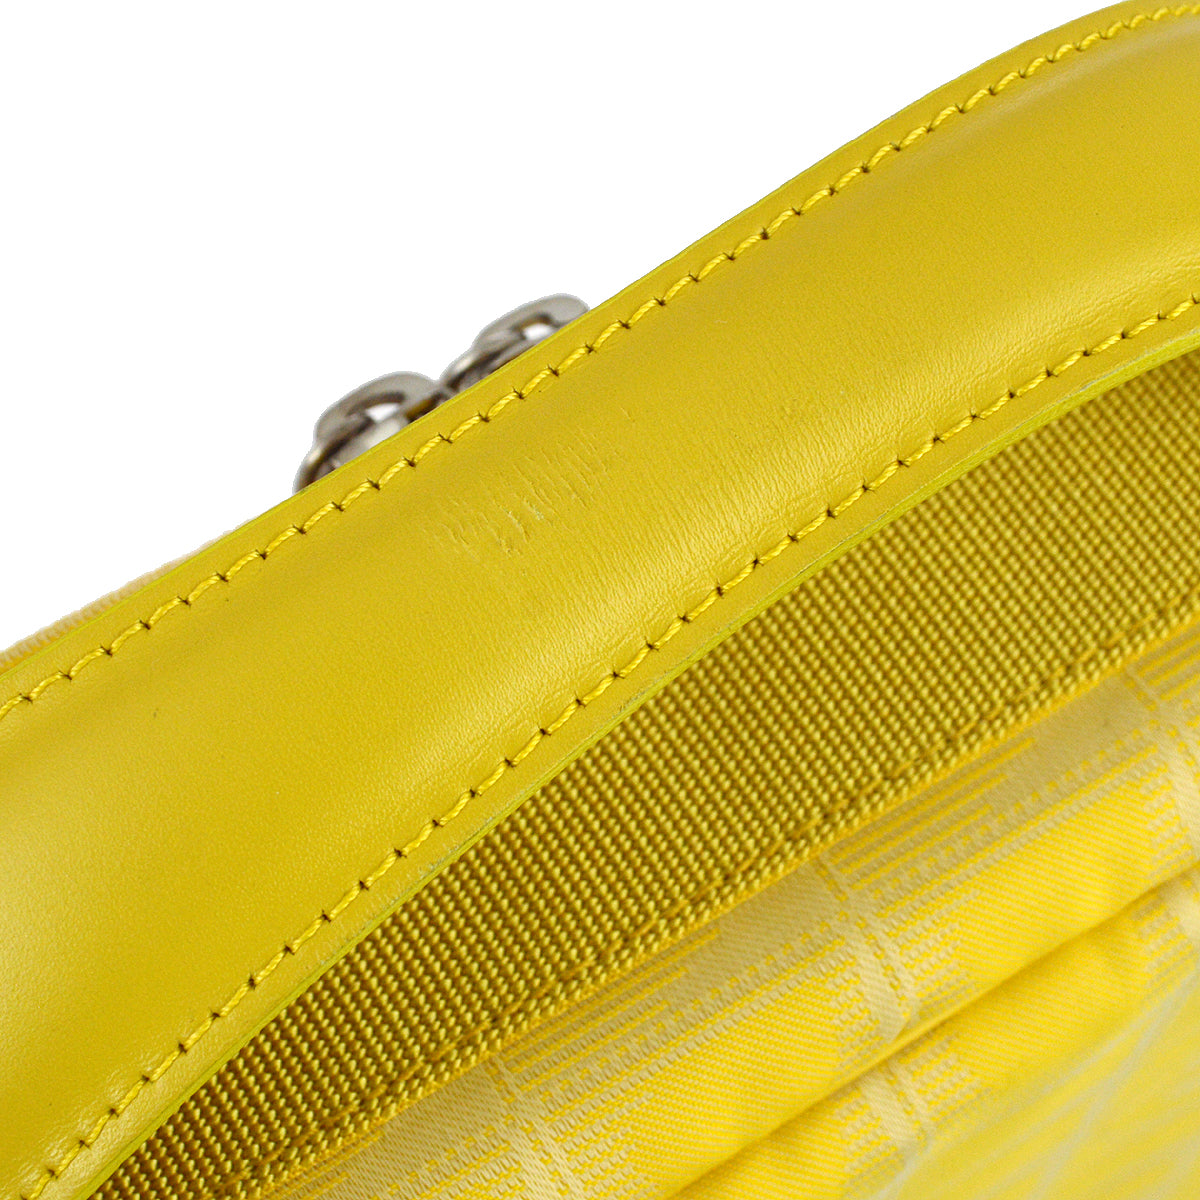 Chanel 2001-2003 黃色提花尼龍新旅行系列手袋